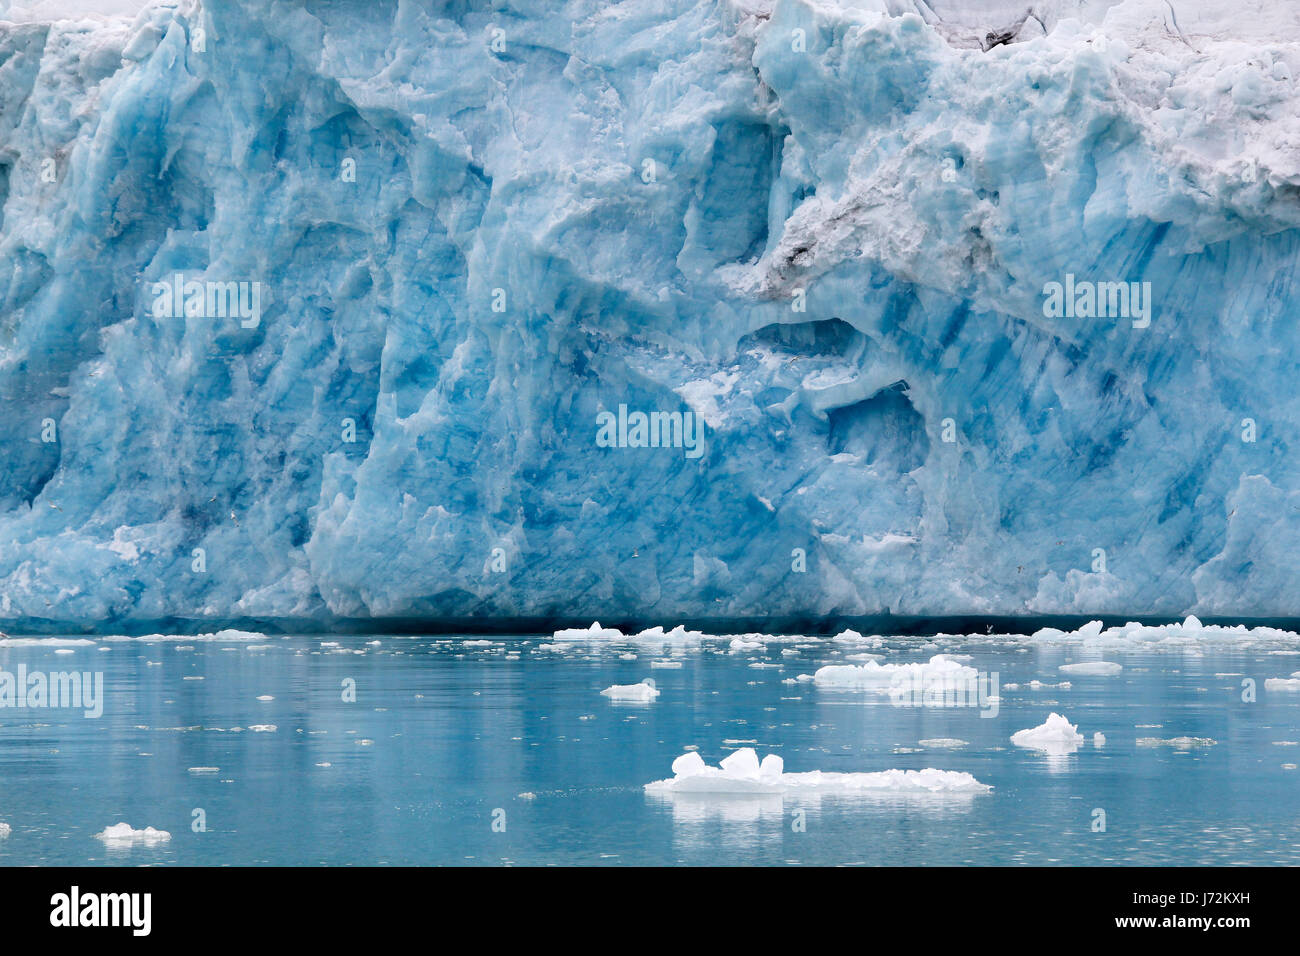 La glace arctique bleu glacier désert désert environnement environnement les glaces de l'Arctique Banque D'Images